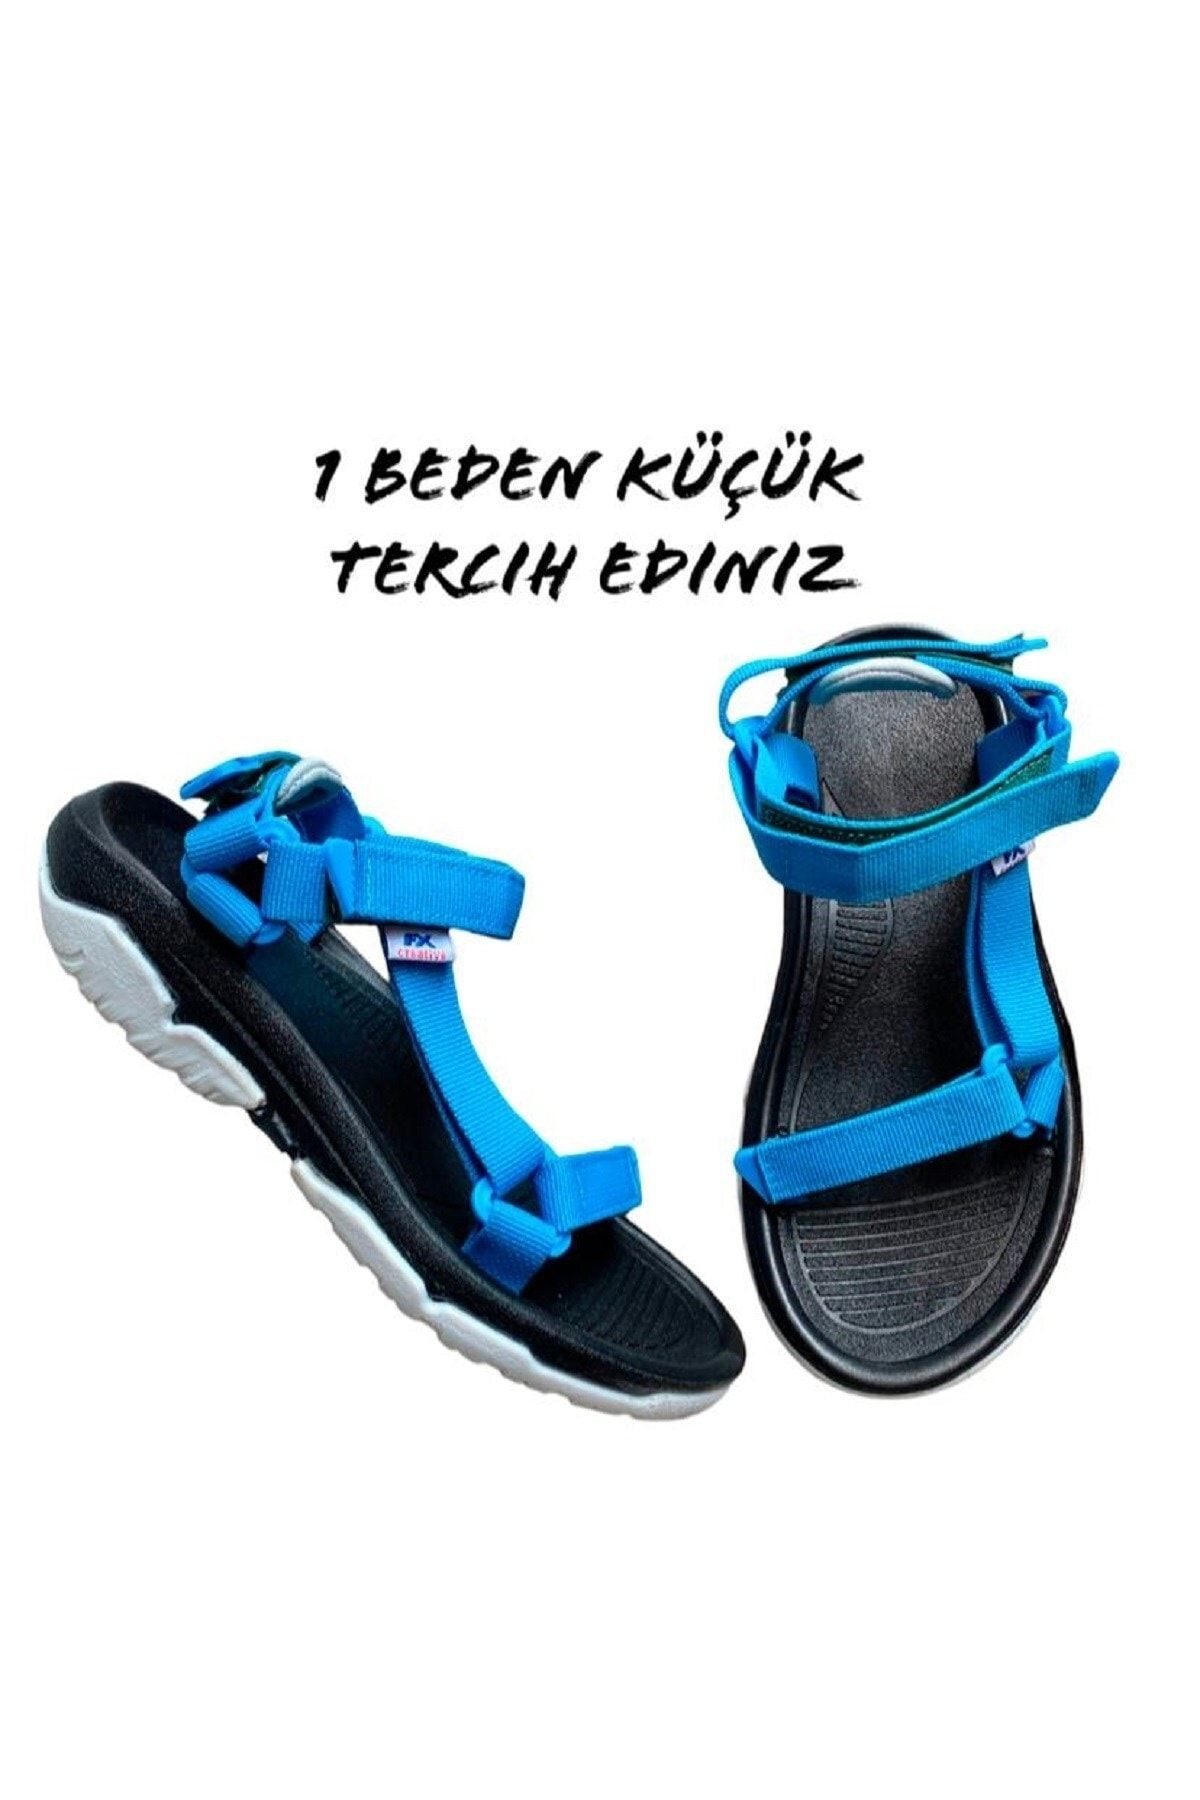 ALTUNTAŞ Fx Kaymaz Taban Cırt Cırtlı Çocuk Spor Sandalet Modeli - Siyah Mavi ( Geniş Kalıp)